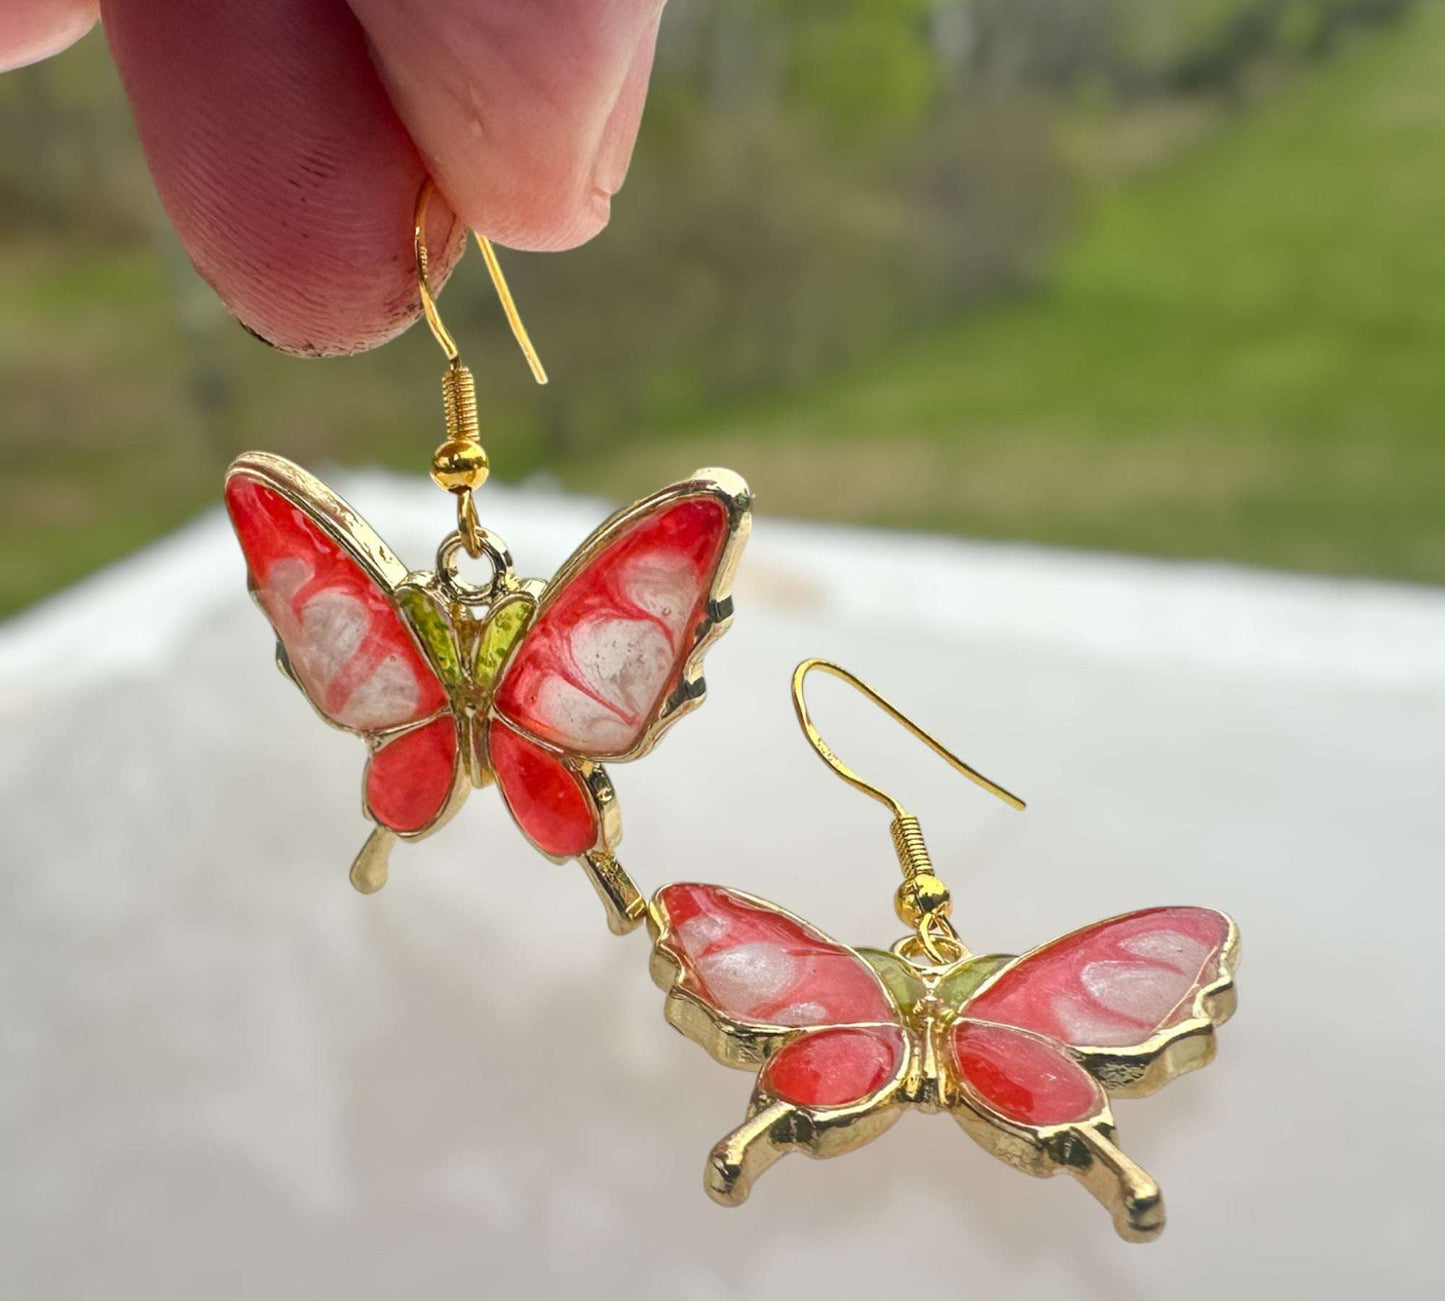 Enchanting Butterfly Romance: Handmade Nature Inspired Earrings